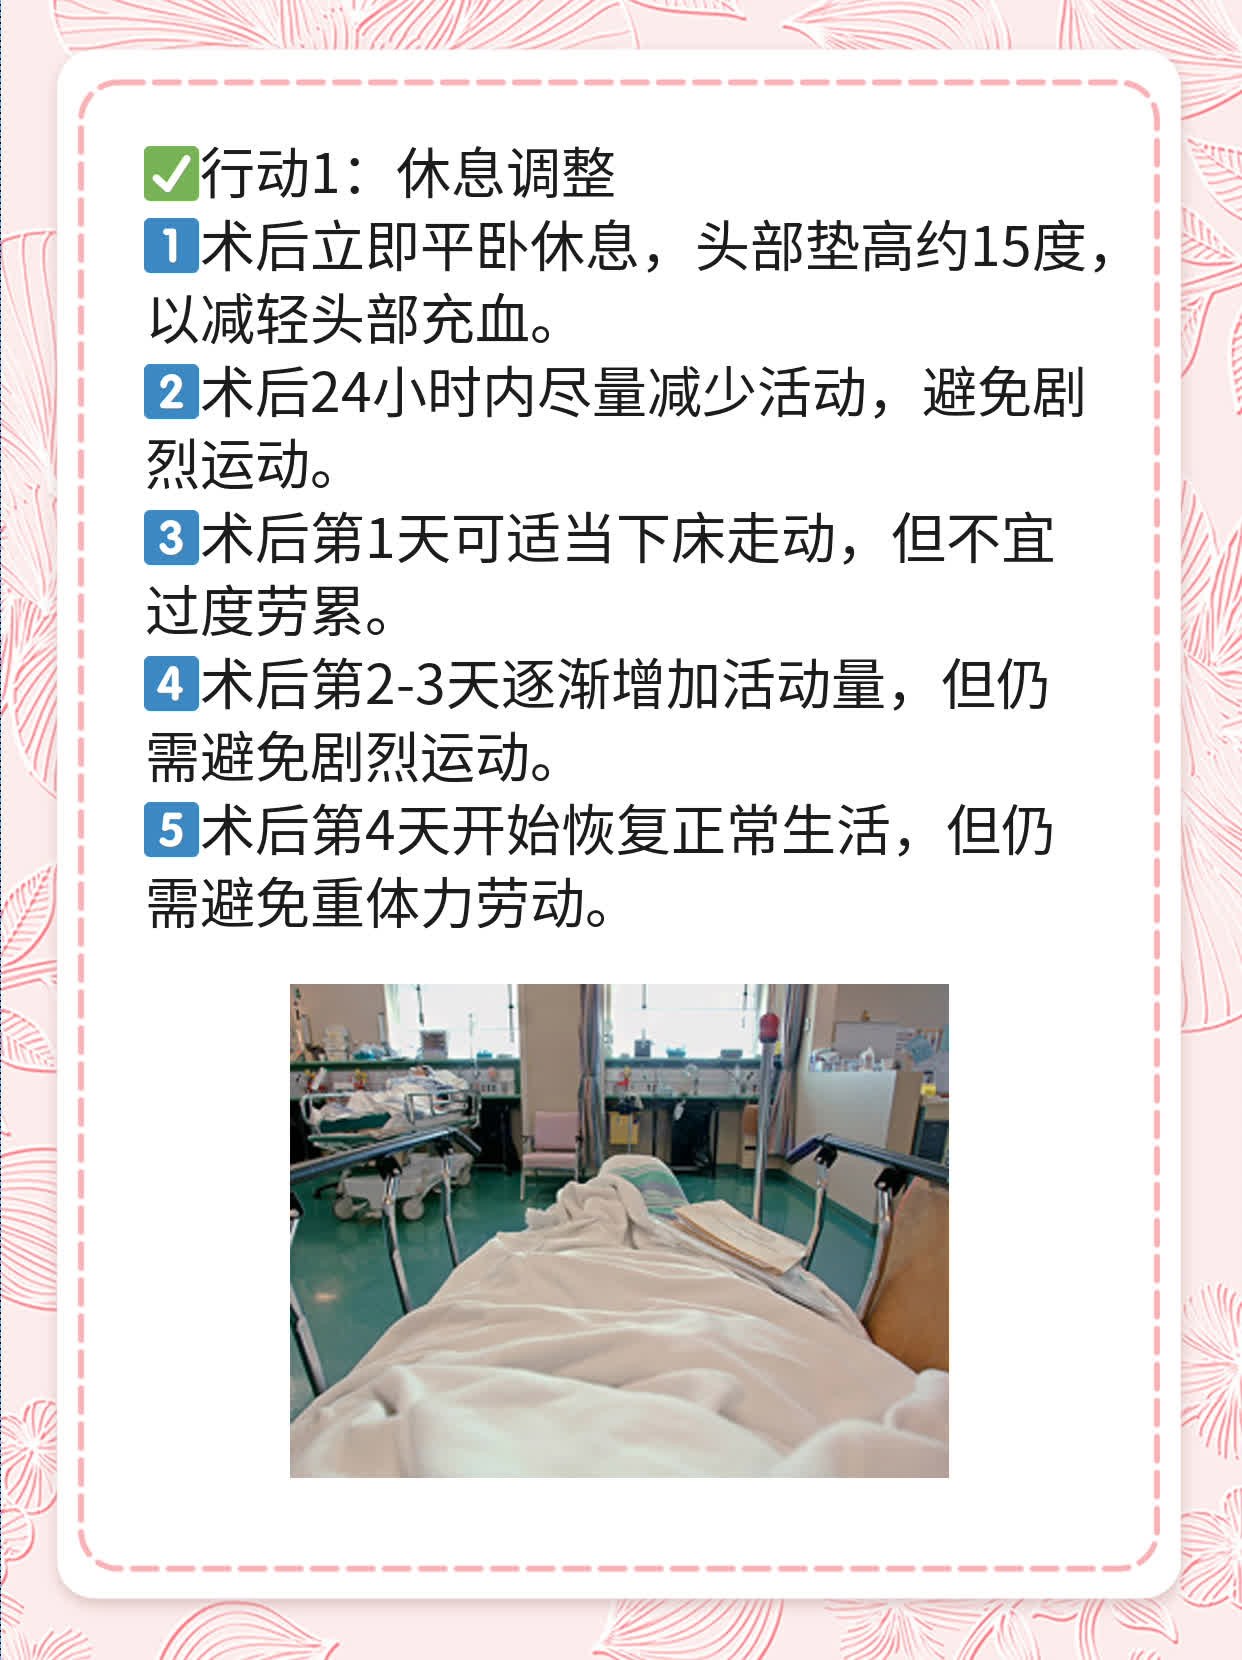 北京那家医院输卵管通而不畅好?